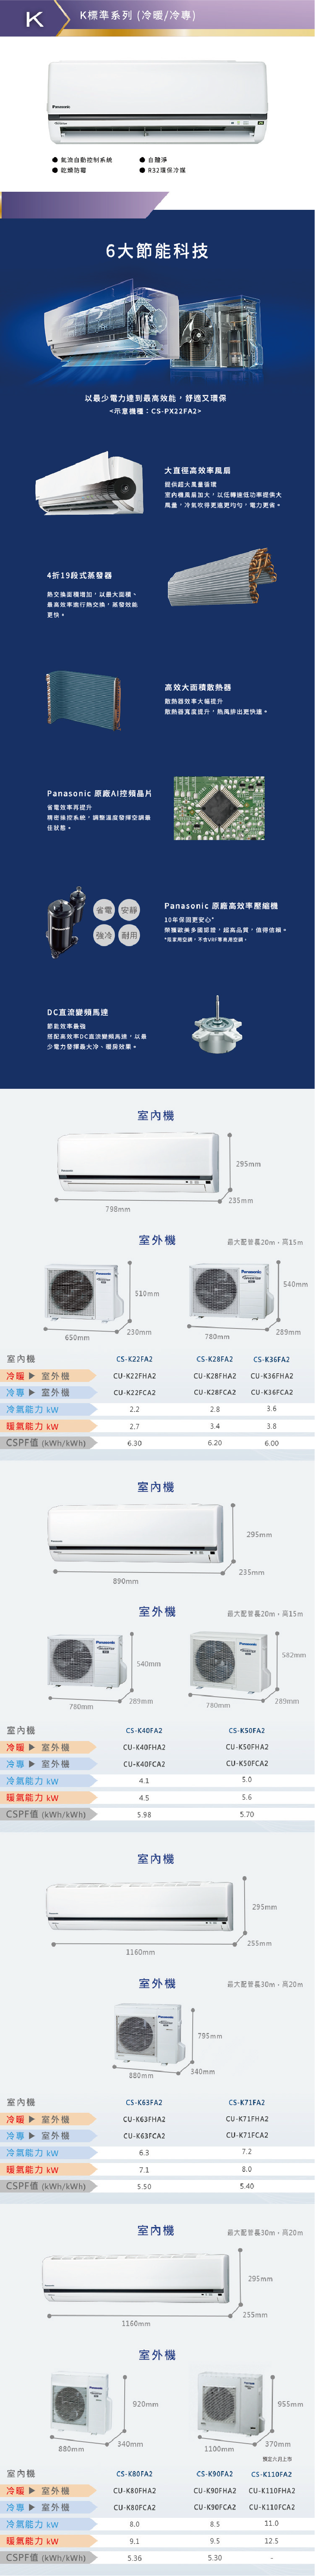 國際 CU-K50FCA2 8坪適用 K系列 分離式 變頻 冷專 冷氣 CS-K50FA2